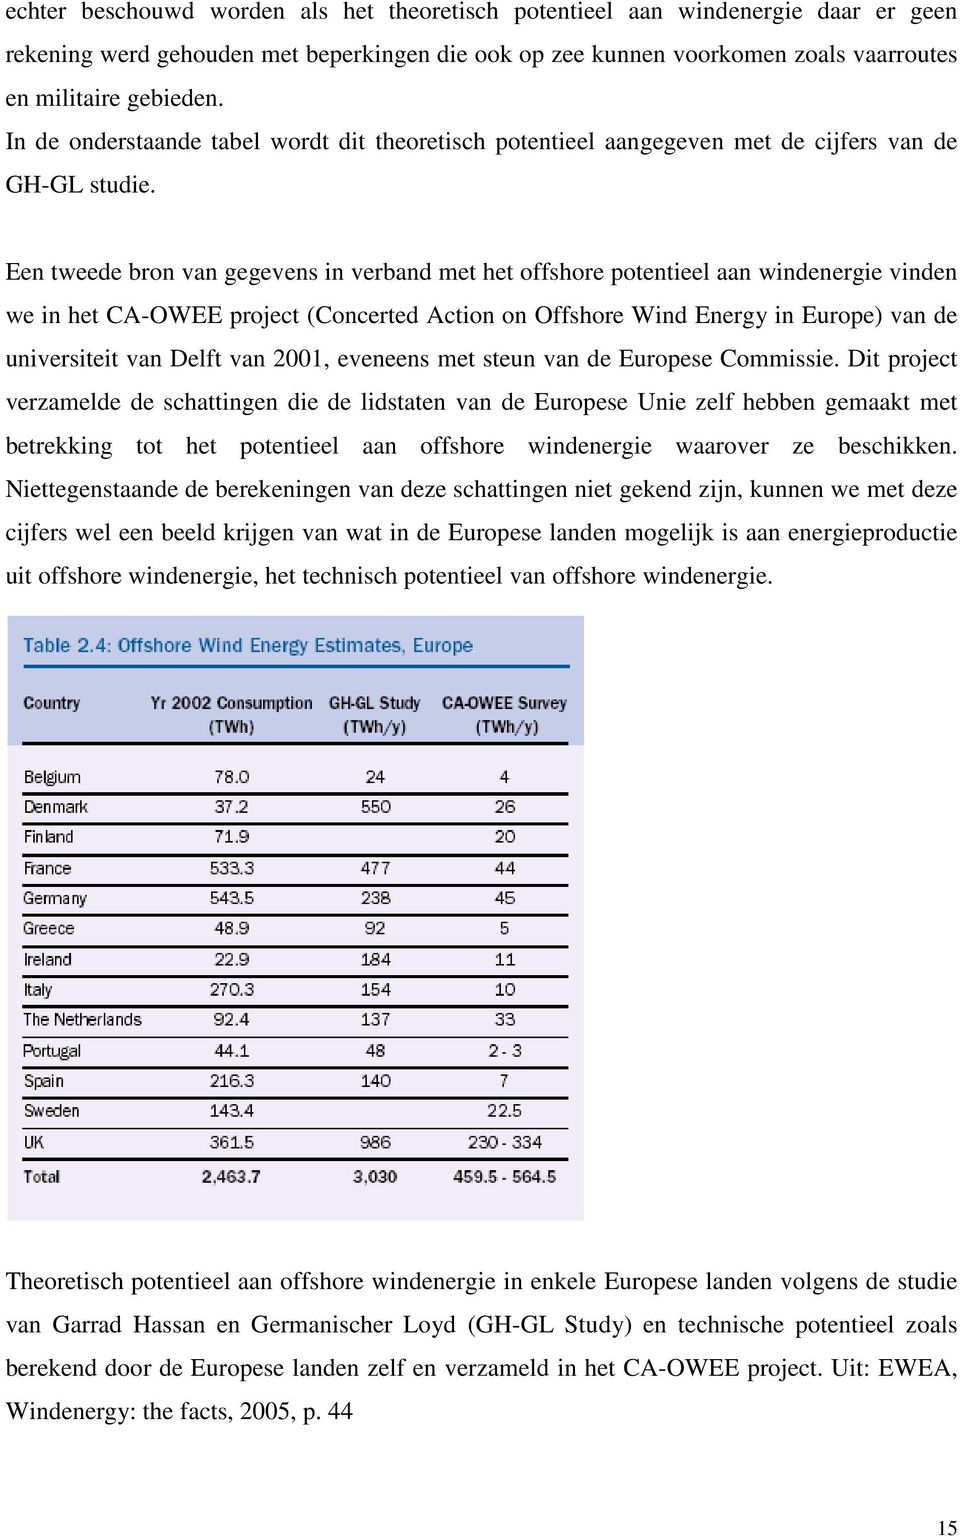 Een tweede bron van gegevens in verband met het offshore potentieel aan windenergie vinden we in het CA-OWEE project (Concerted Action on Offshore Wind Energy in Europe) van de universiteit van Delft